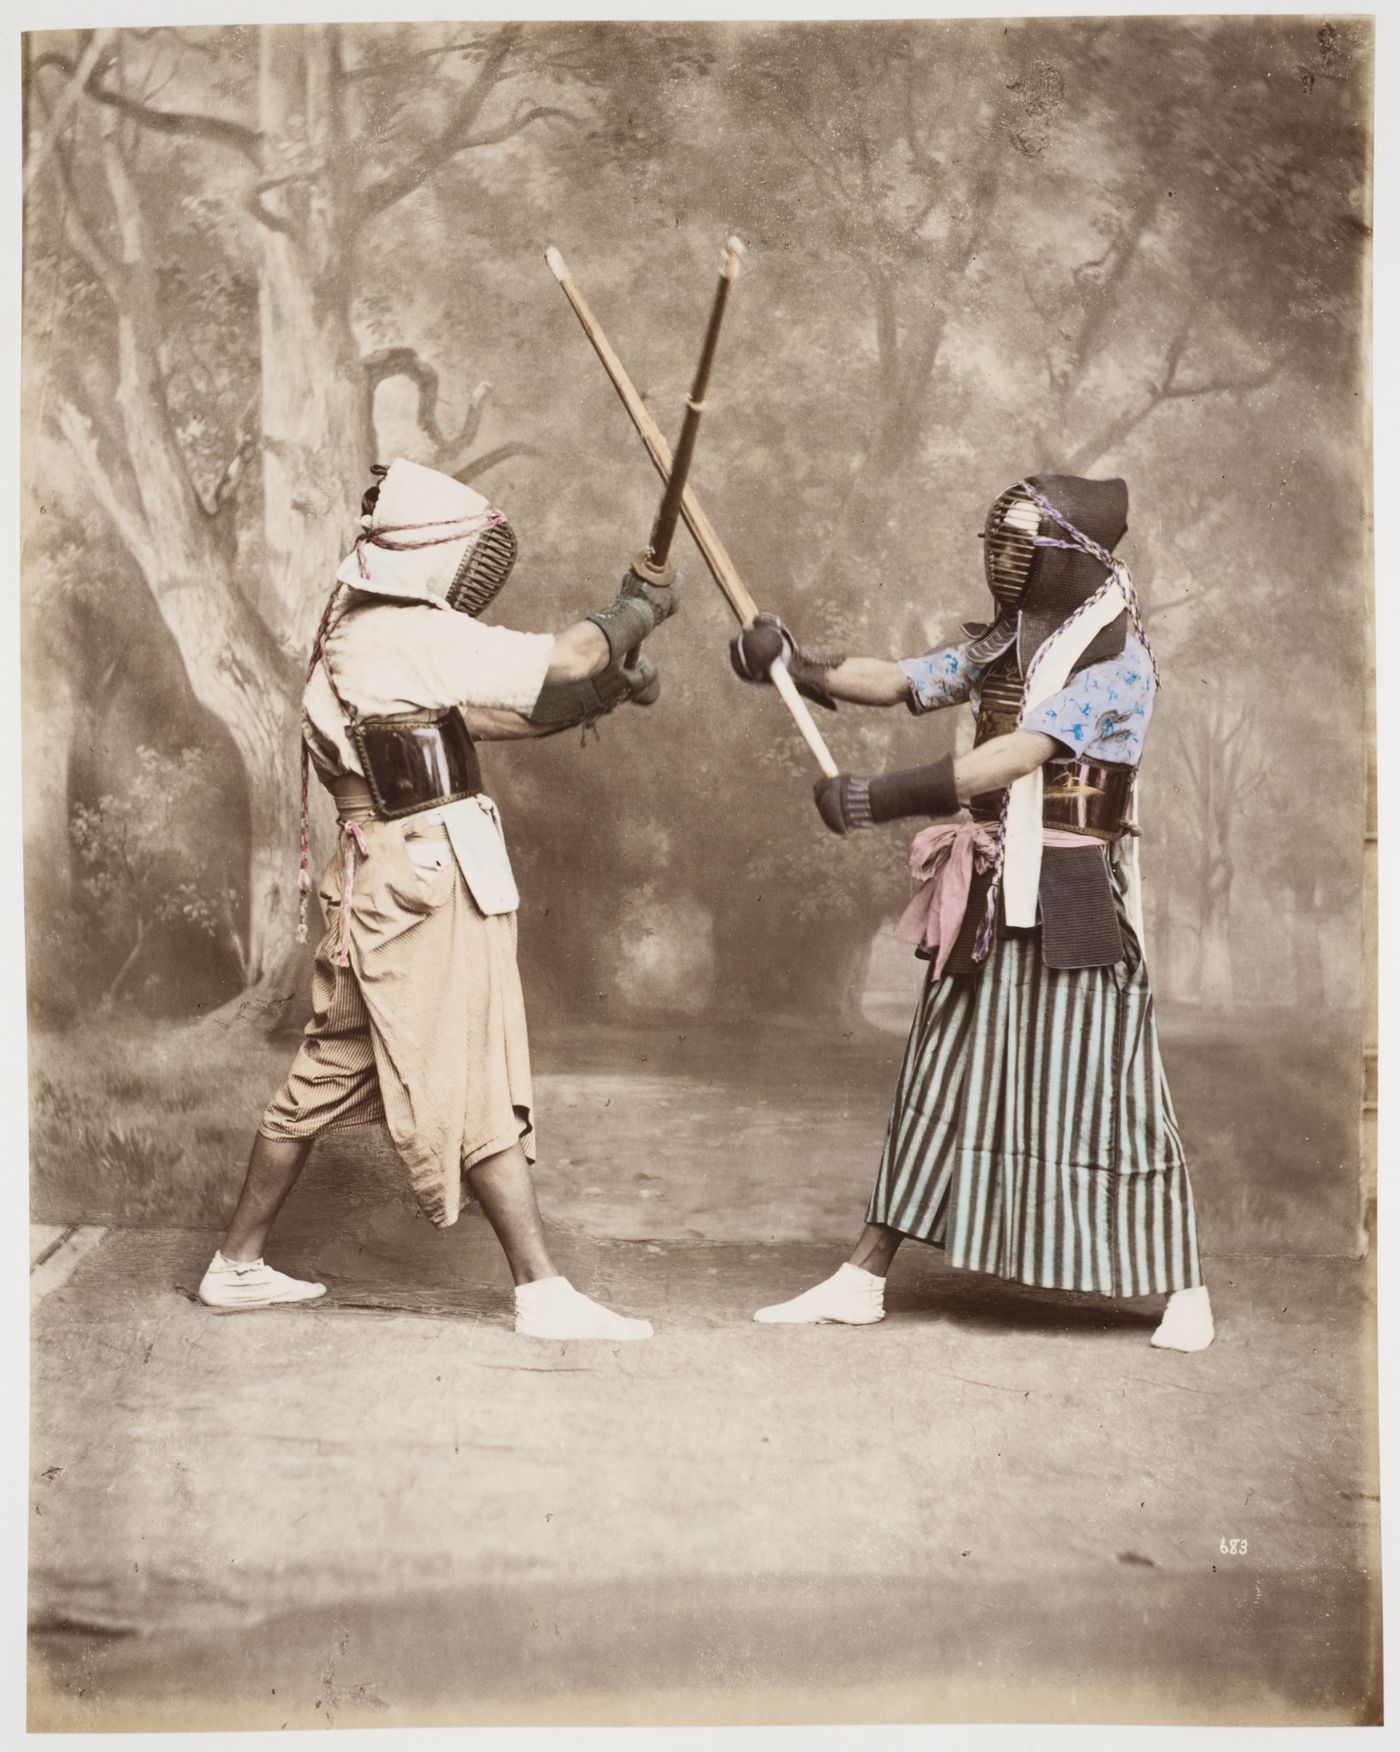 Group portrait of two kendo participants, Japan